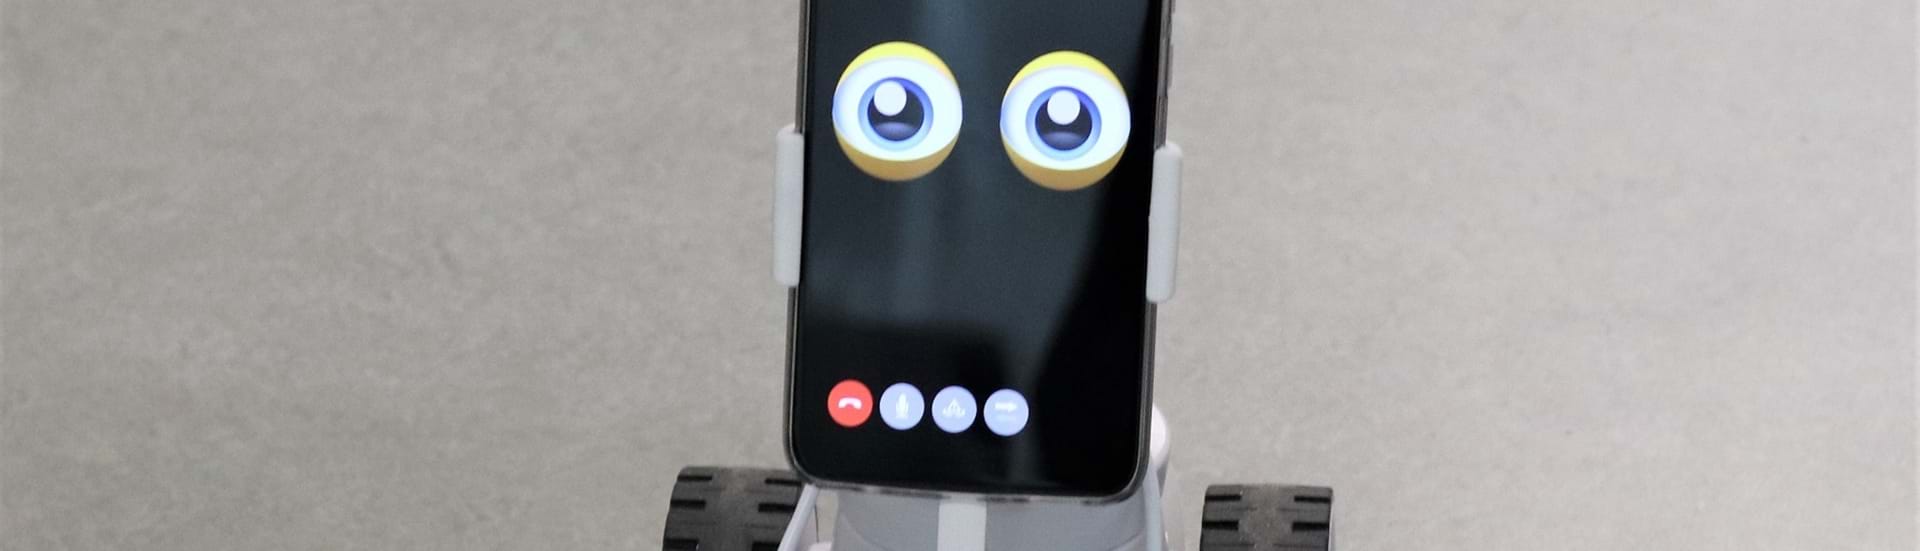 En lille robot med hjul på kigger ind i kameraet med sine tegnede øjne.